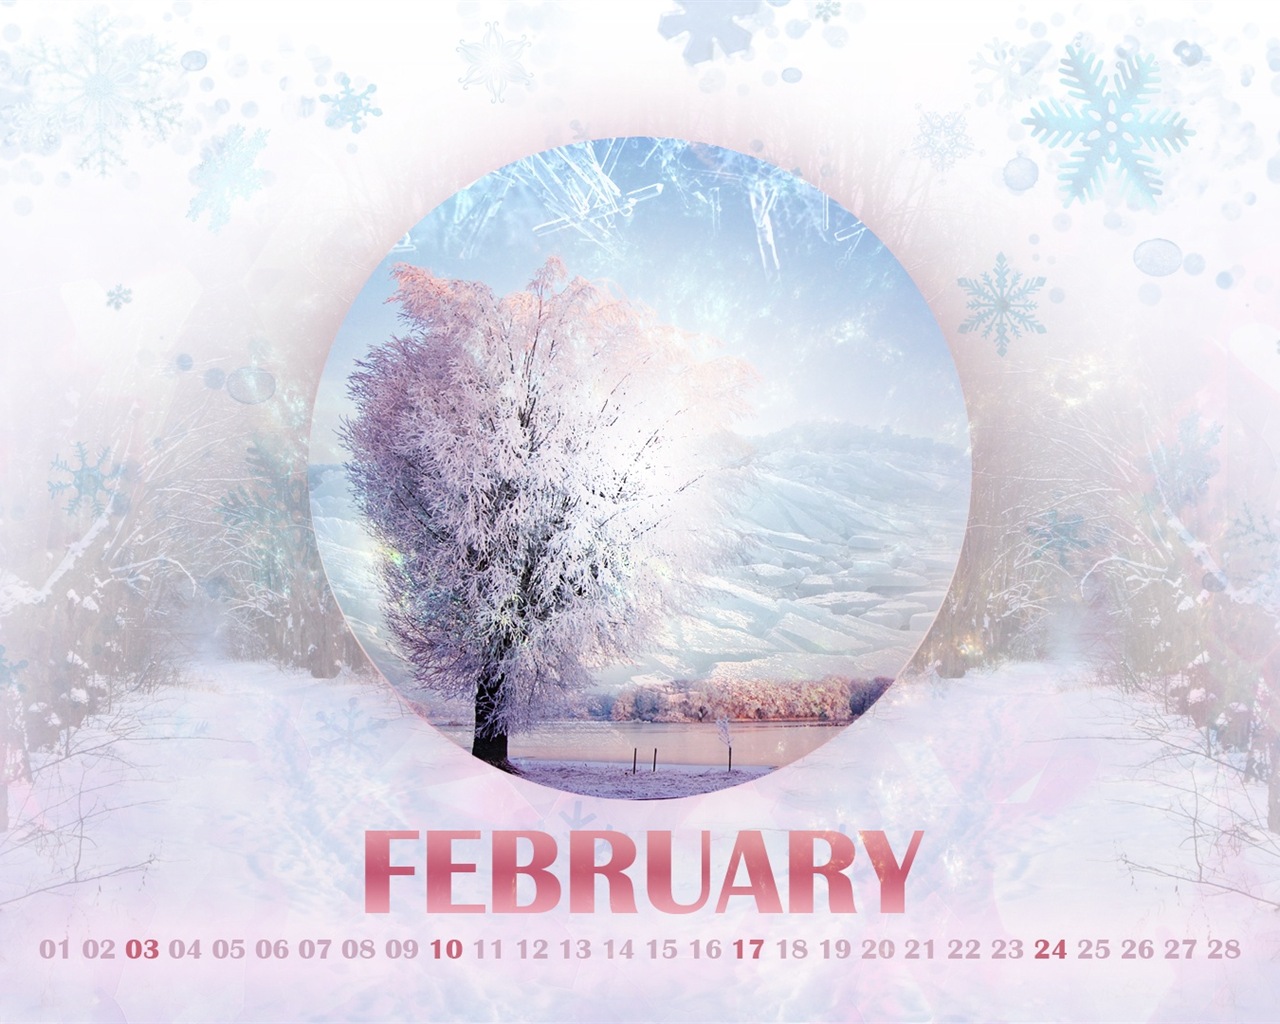 February 2013 Calendar wallpaper (2) #14 - 1280x1024